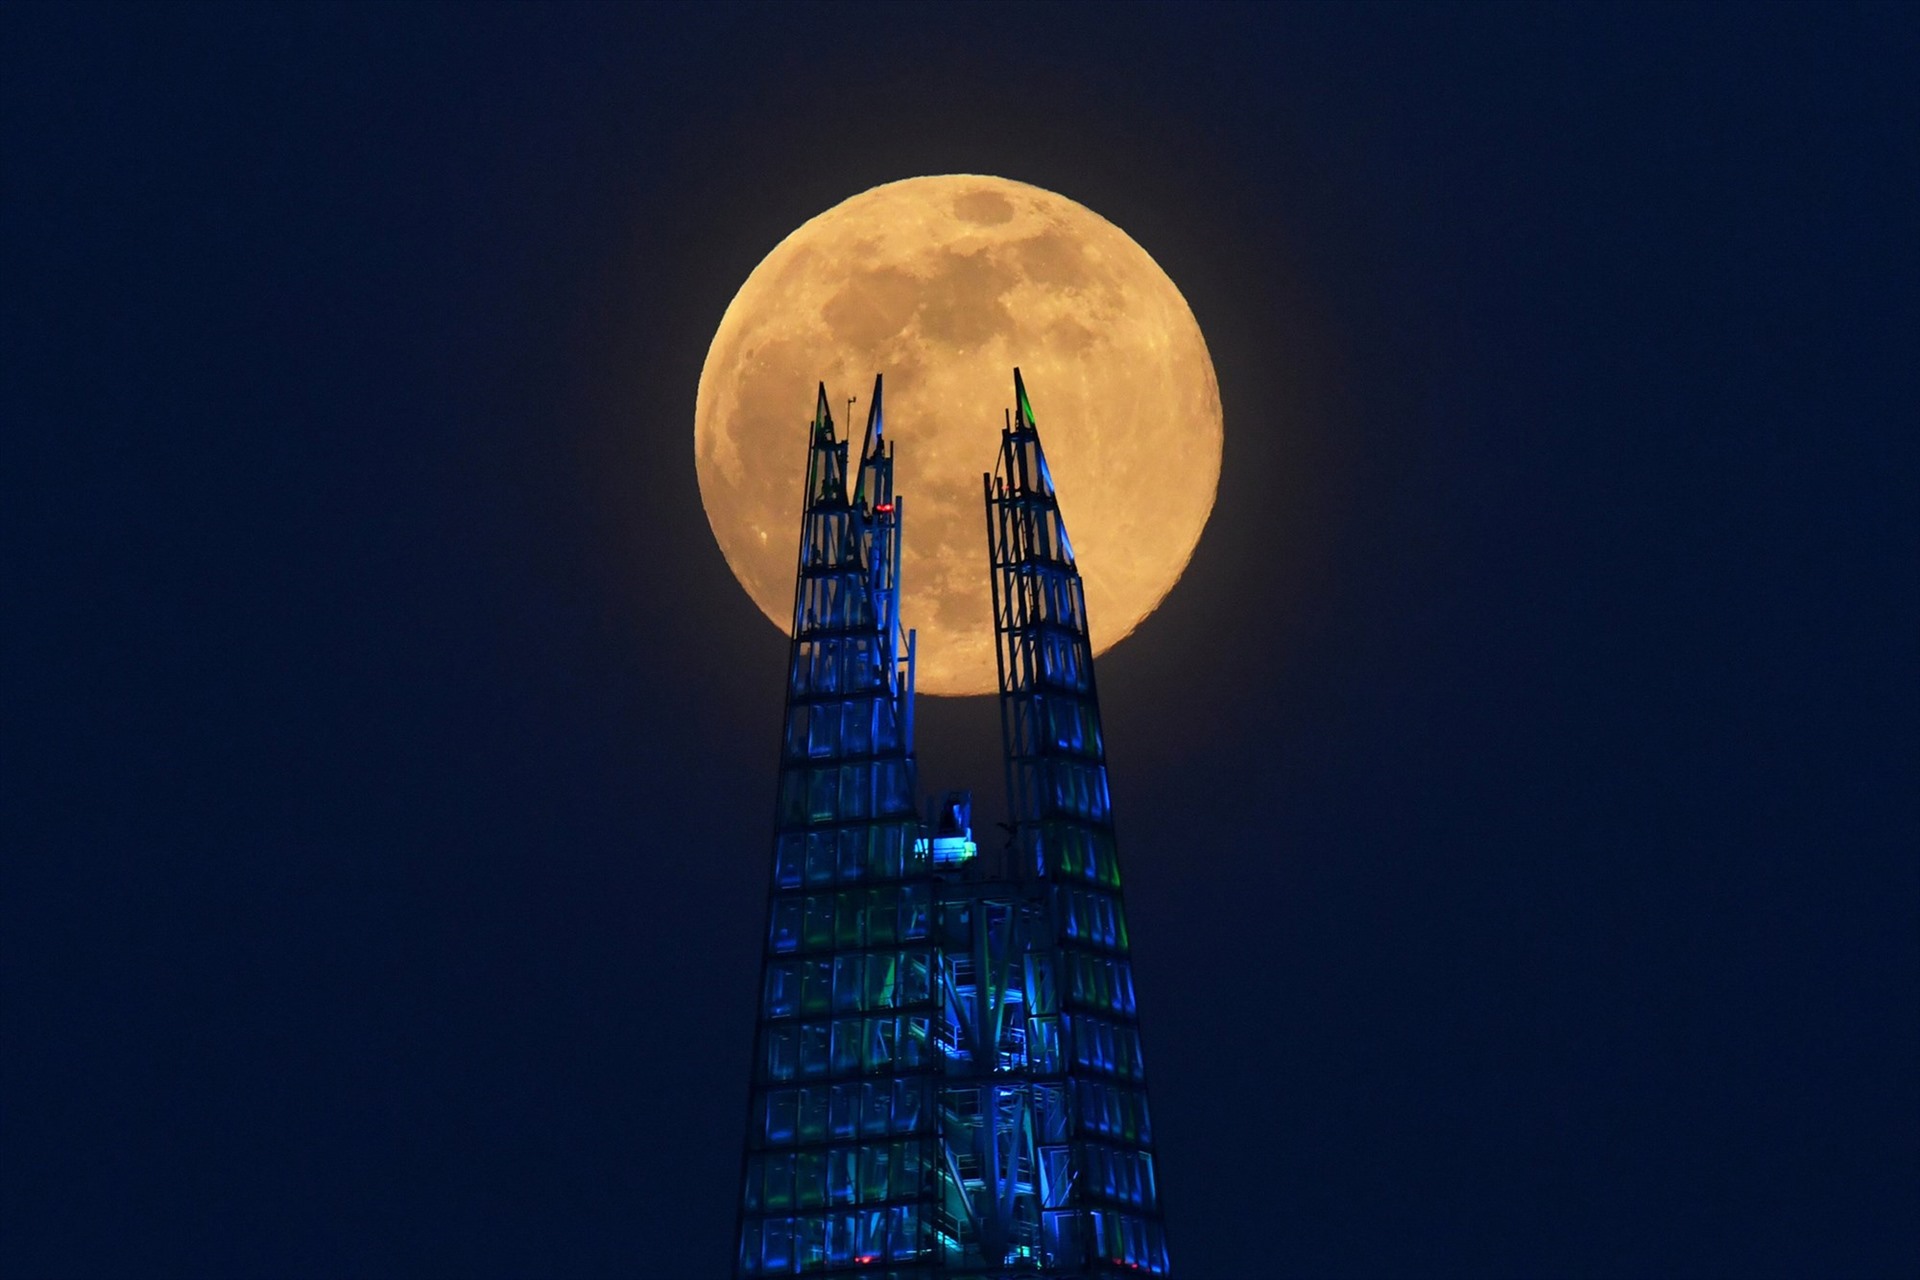 Siêu trăng hồng - siêu trăng lớn nhất và sáng nhất năm 2020 - được quan sát ở cao ốc Shard ở London, Anh tối 7.4. Ảnh: Reuters.